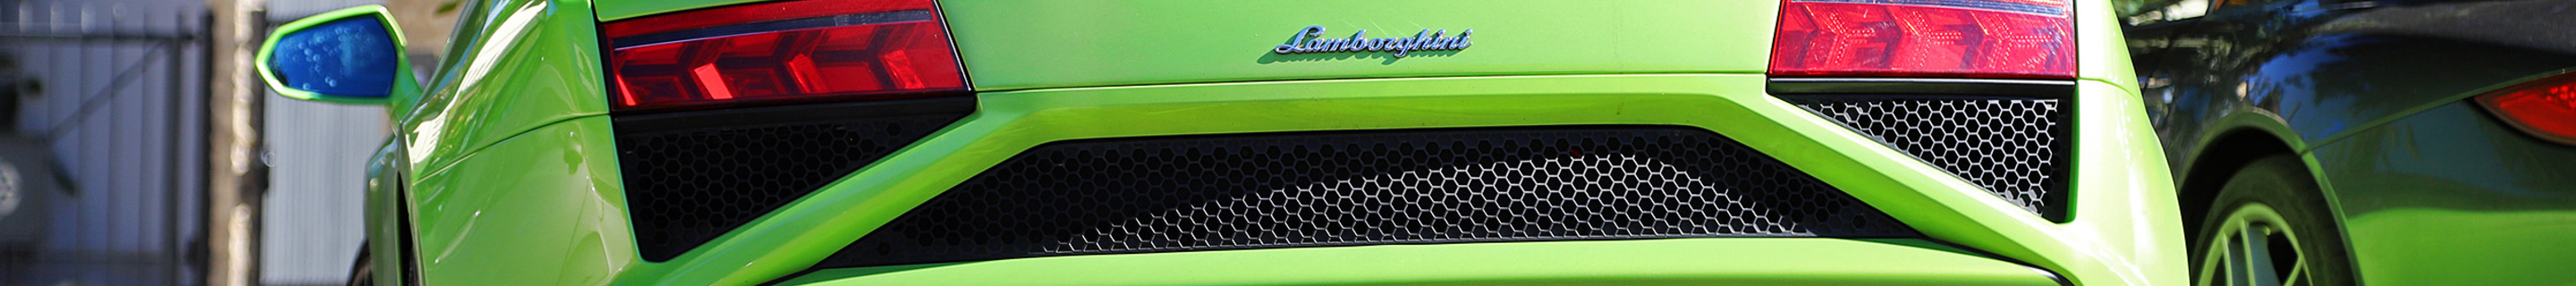 Lamborghini Gallardo LP560-4 Spyder 2013